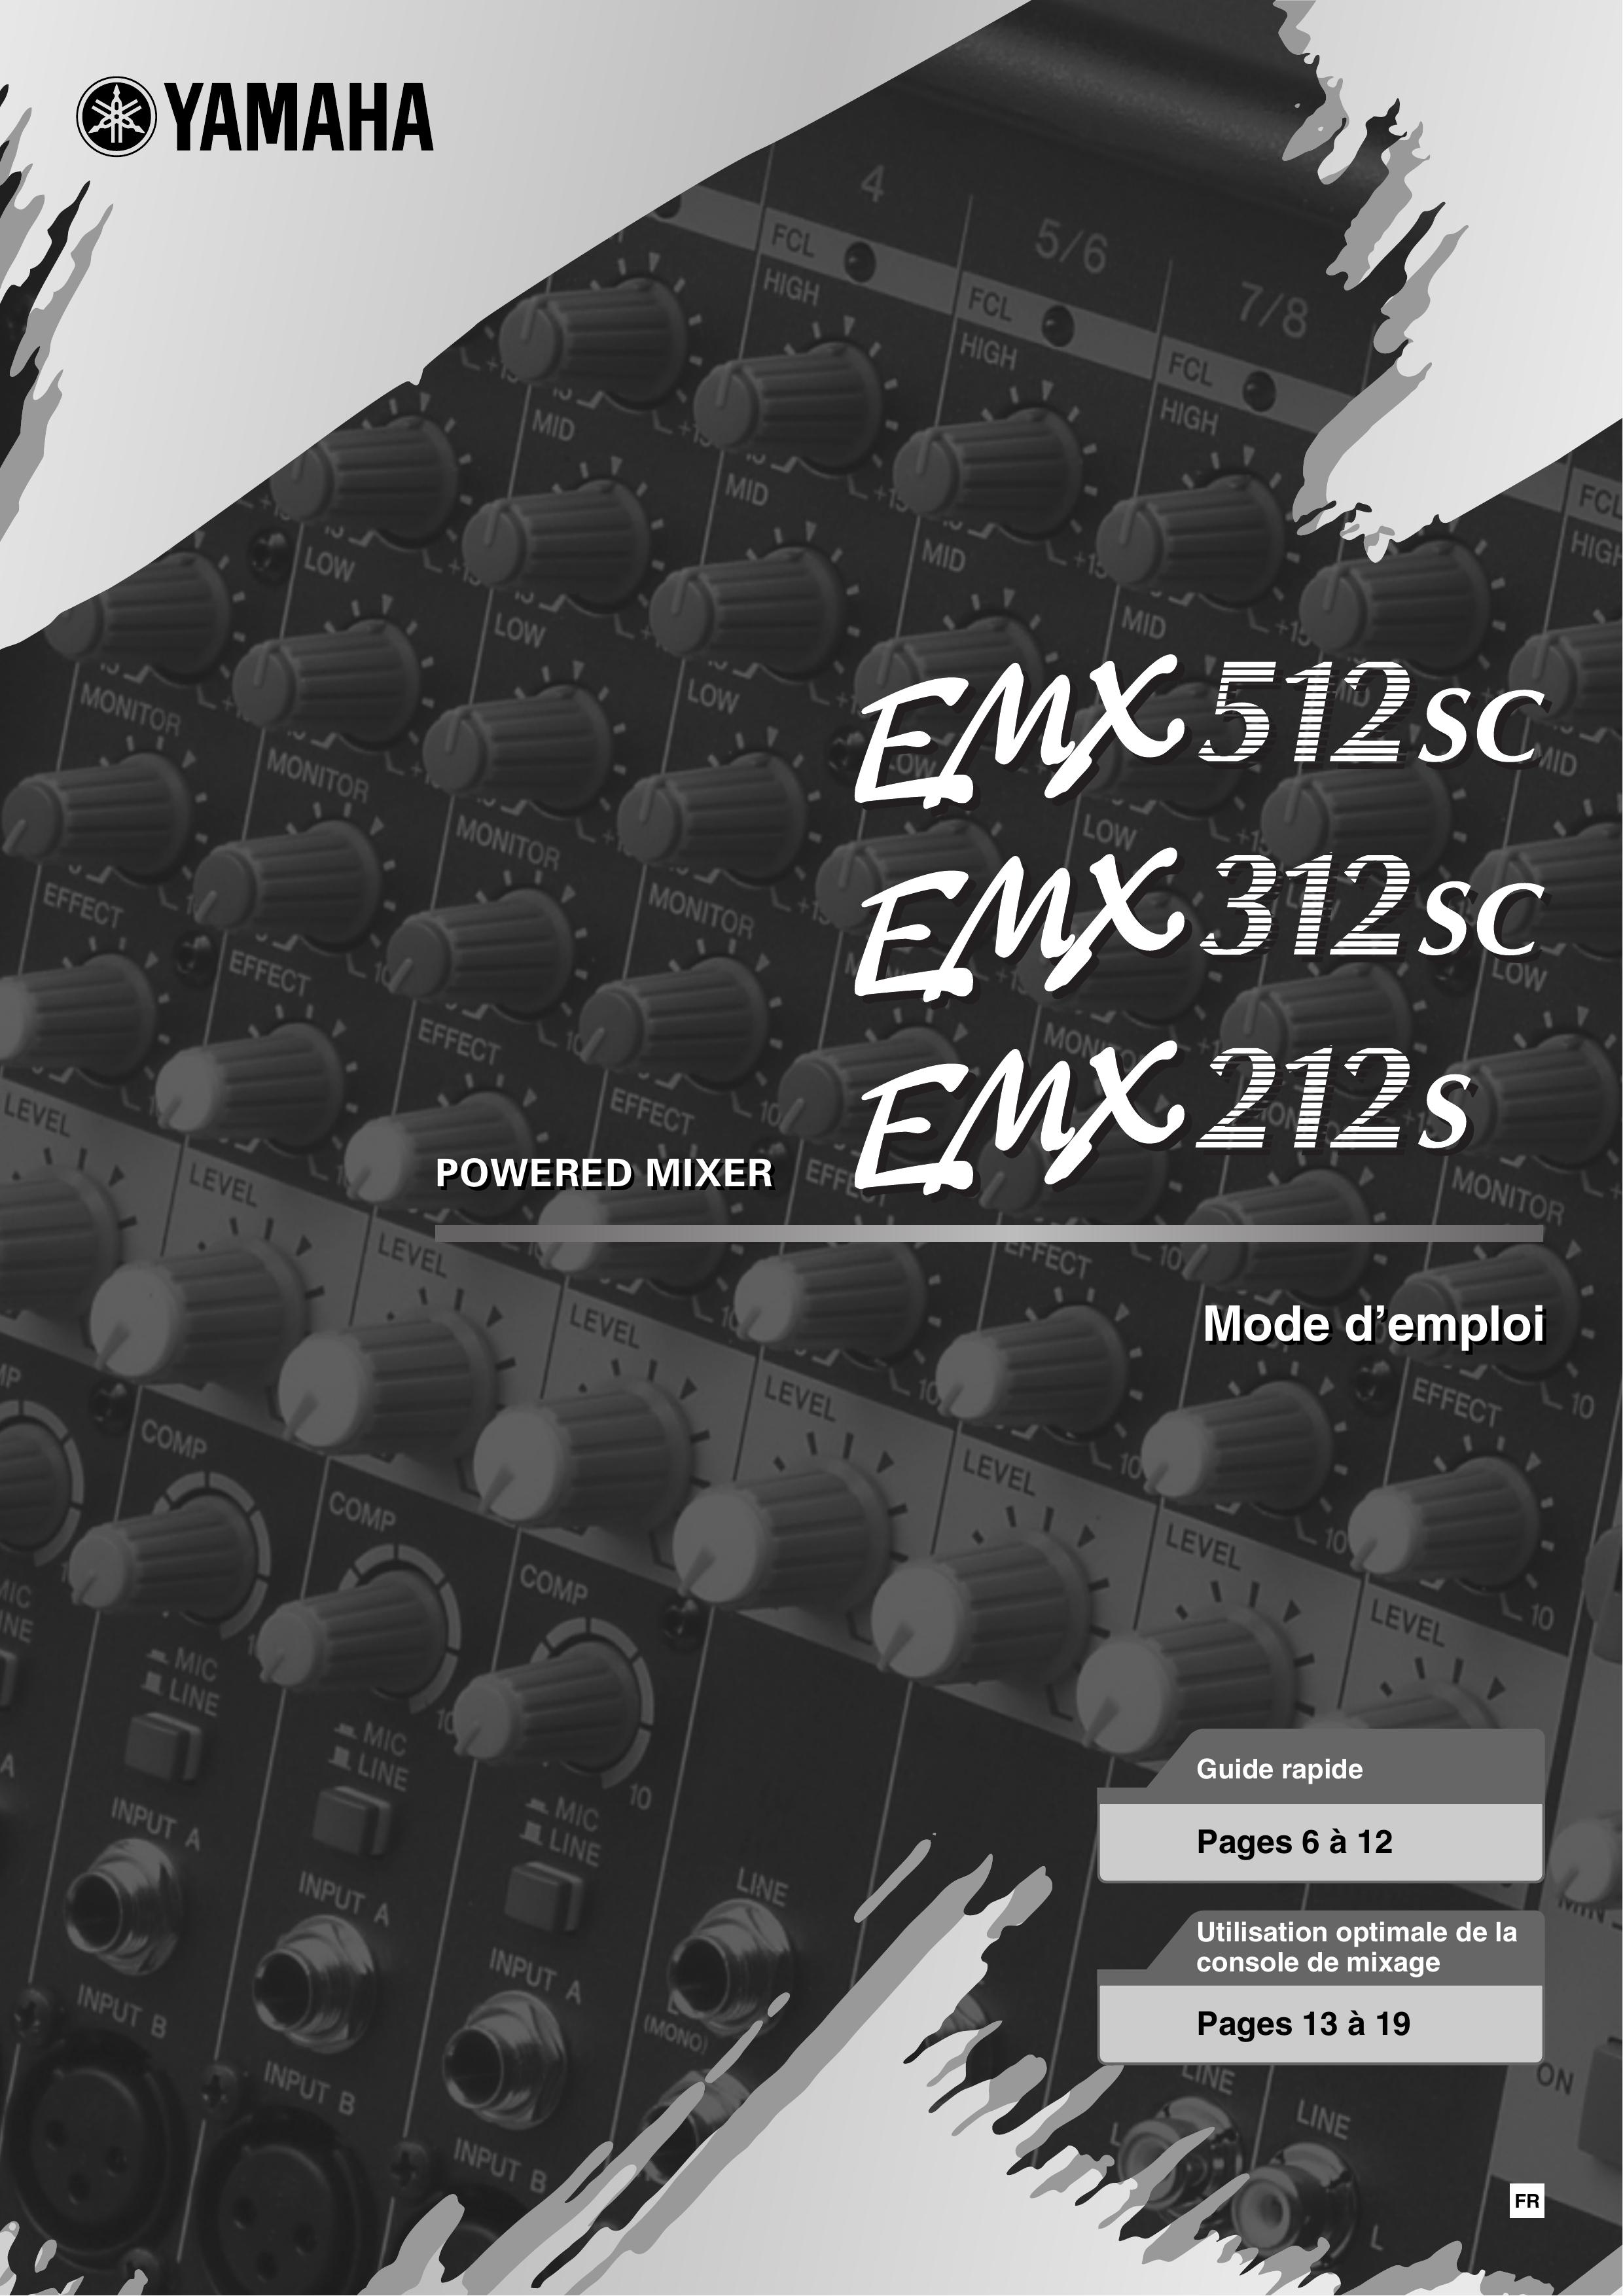 Yamaha EMX512Ssc Music Mixer User Manual